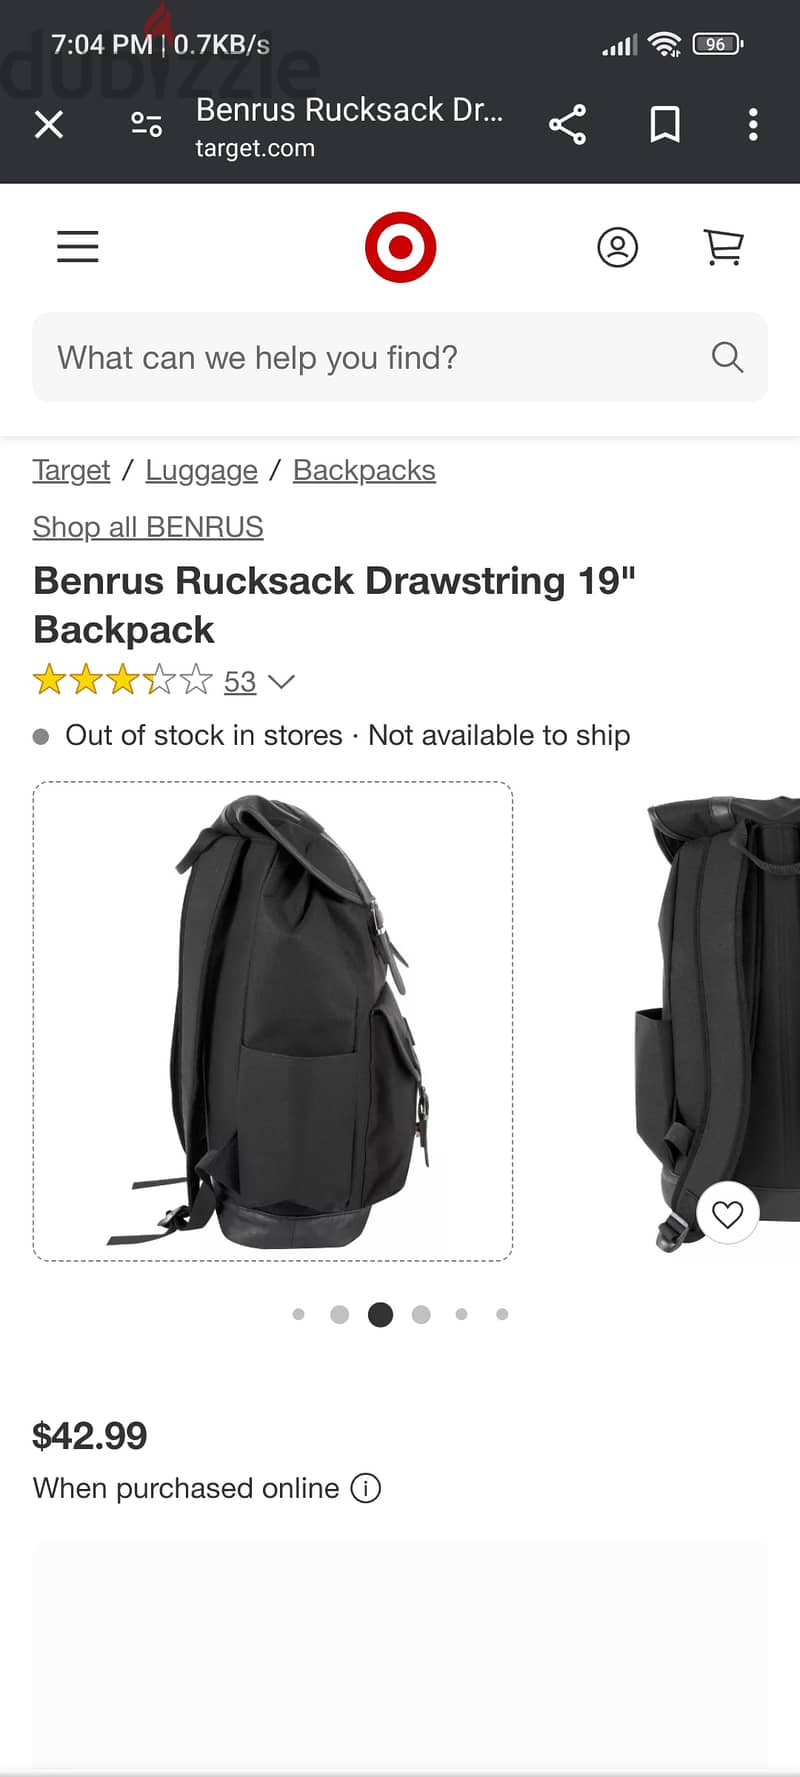 Benrus Rucksack Drawstring 19" Backpack 4